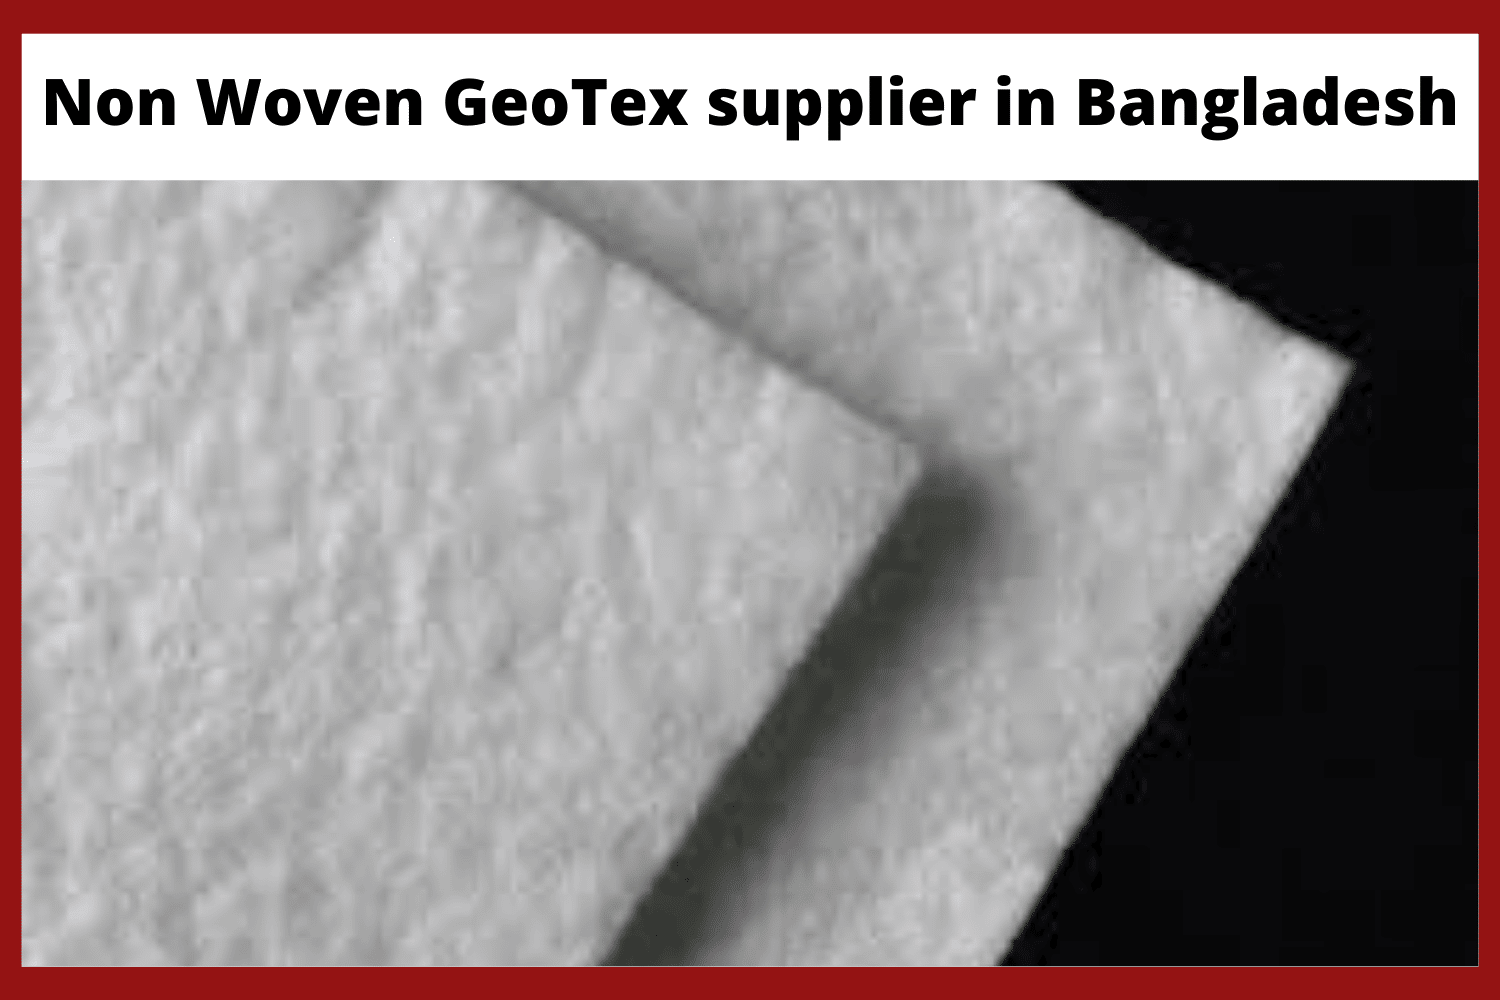 Non woven geotextile supplier in Bangladesh